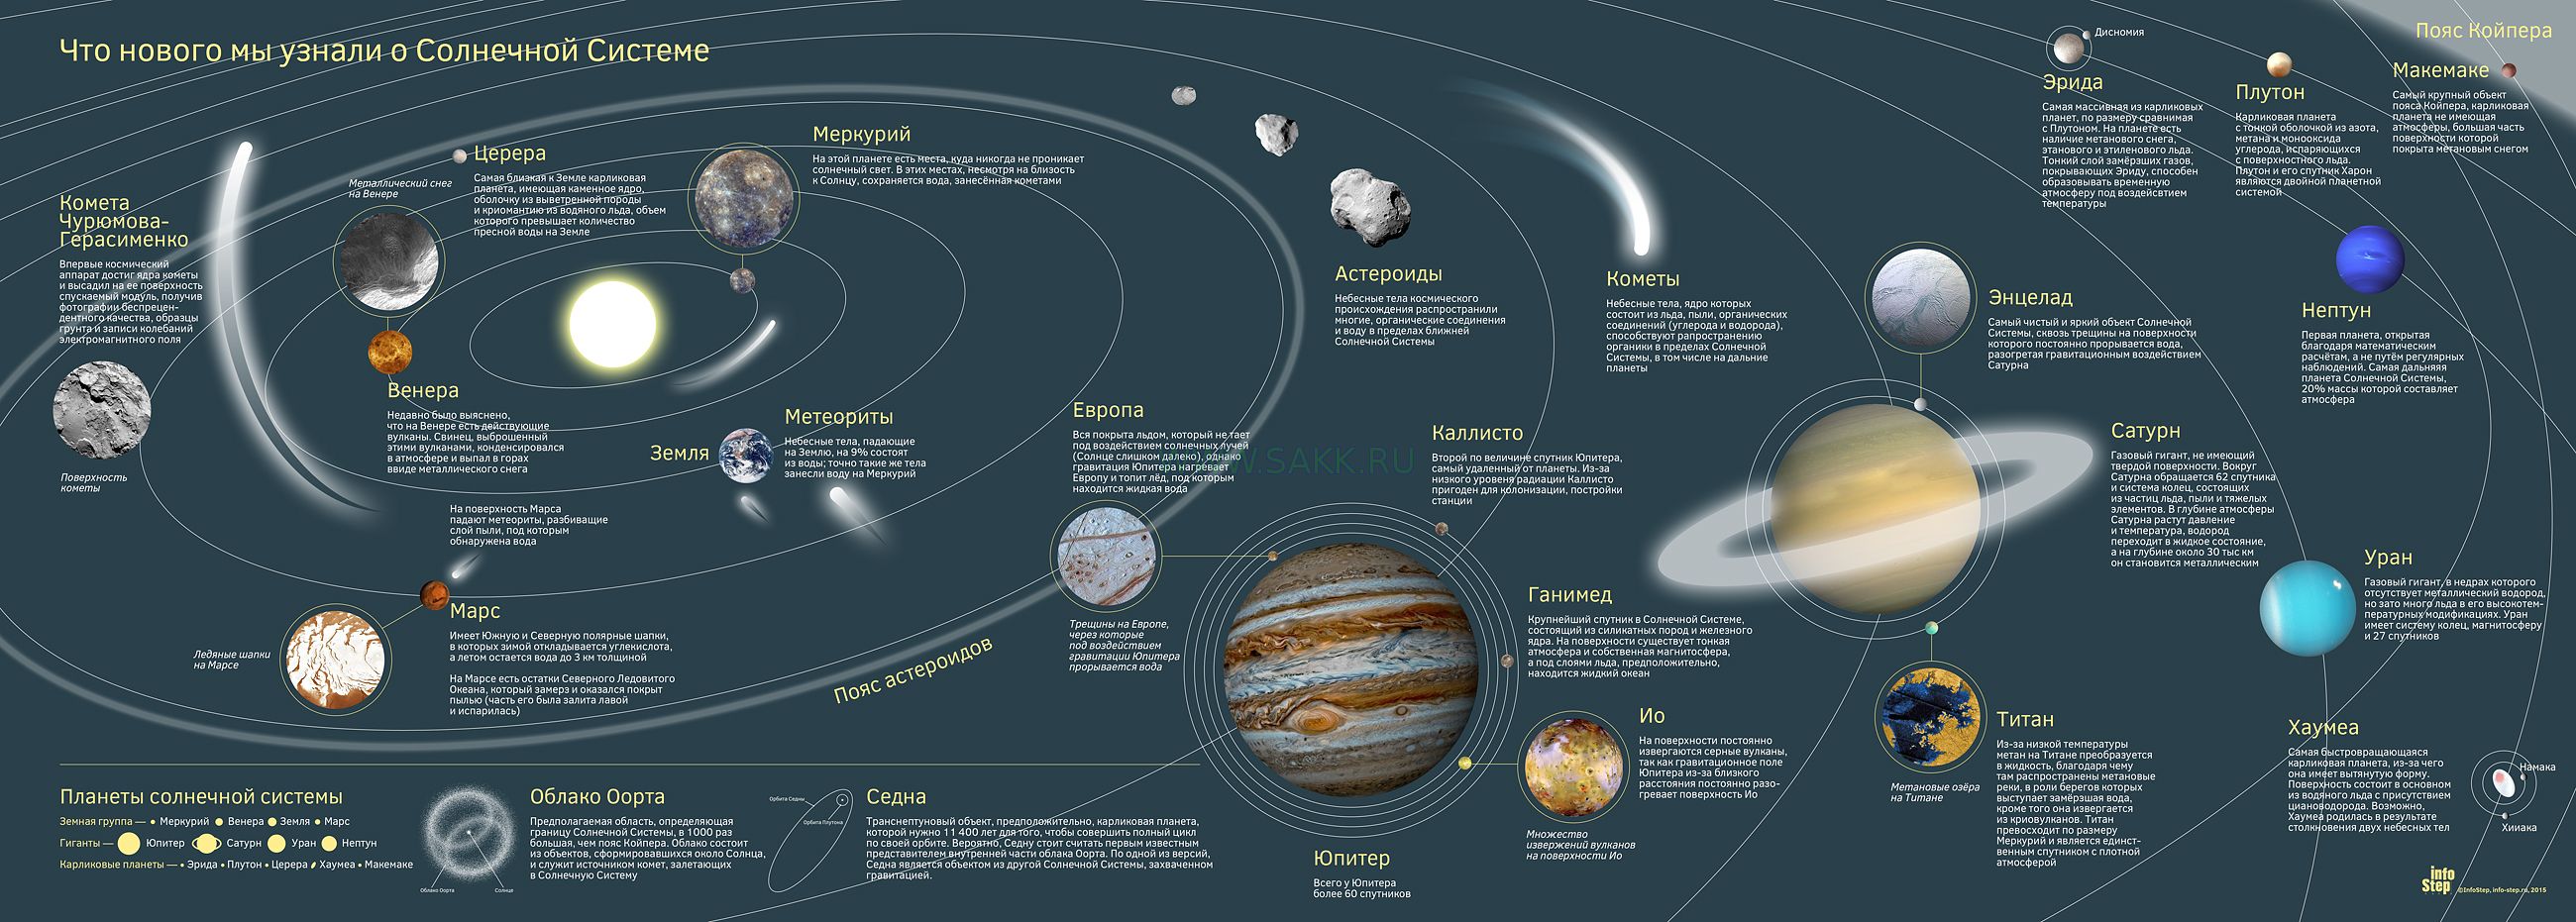 Планеты солнечной системы по порядку от солнца и их спутники